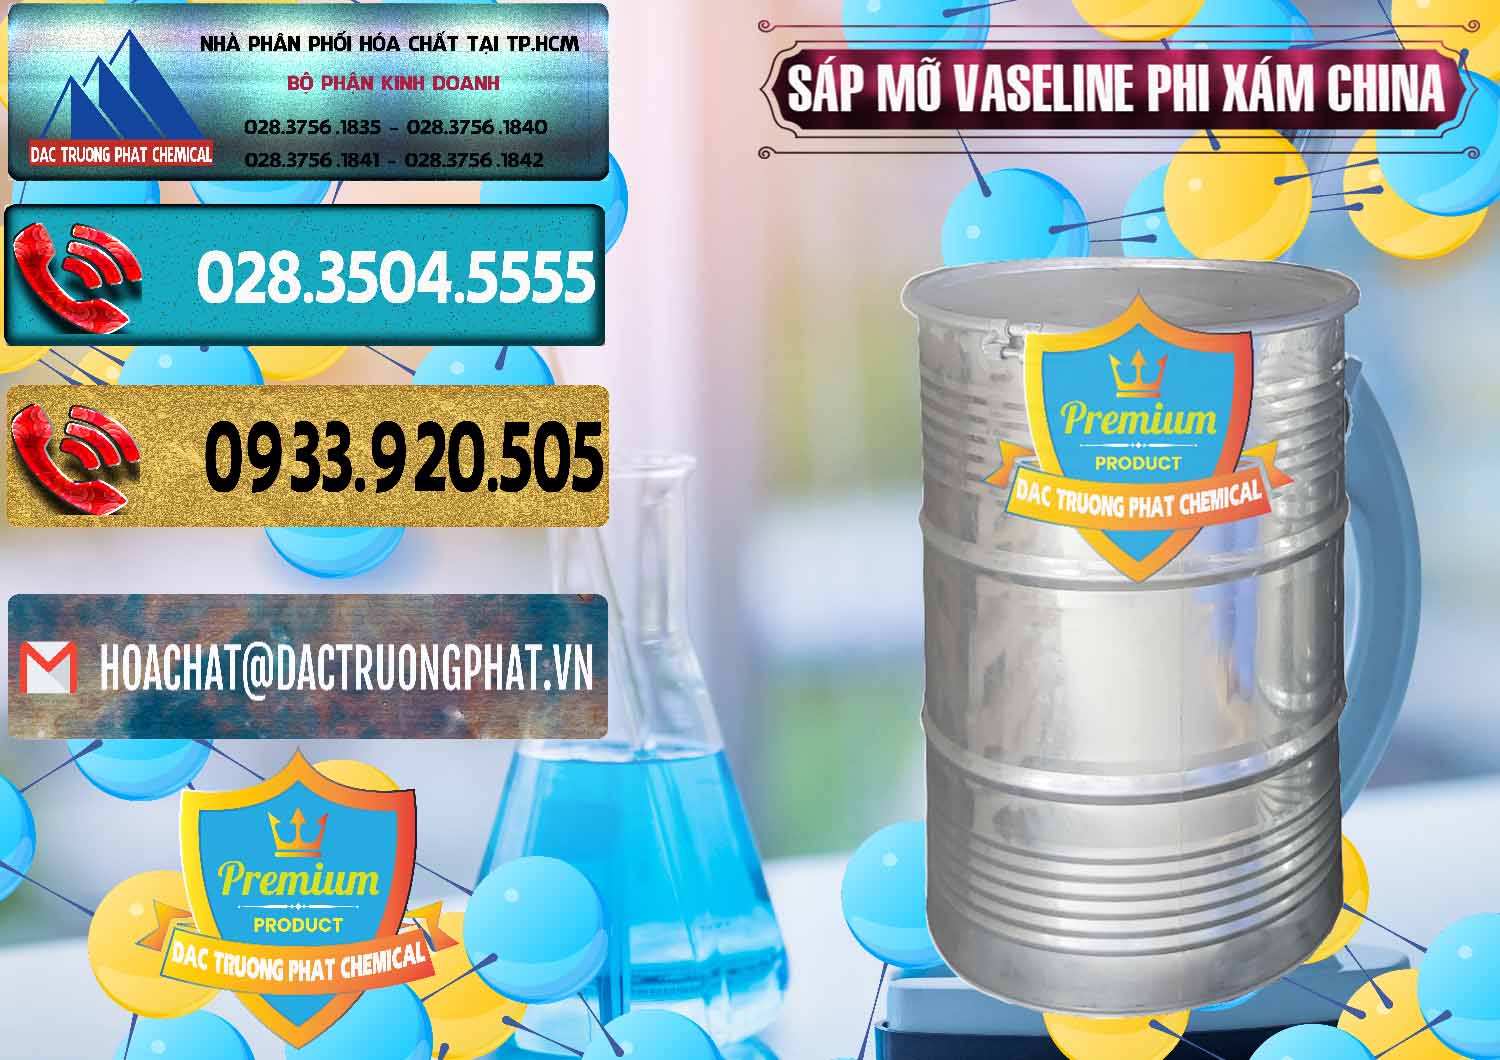 Nơi phân phối & bán Sáp Mỡ Vaseline Phi Xám Trung Quốc China - 0291 - Chuyên cung cấp - phân phối hóa chất tại TP.HCM - hoachatdetnhuom.com